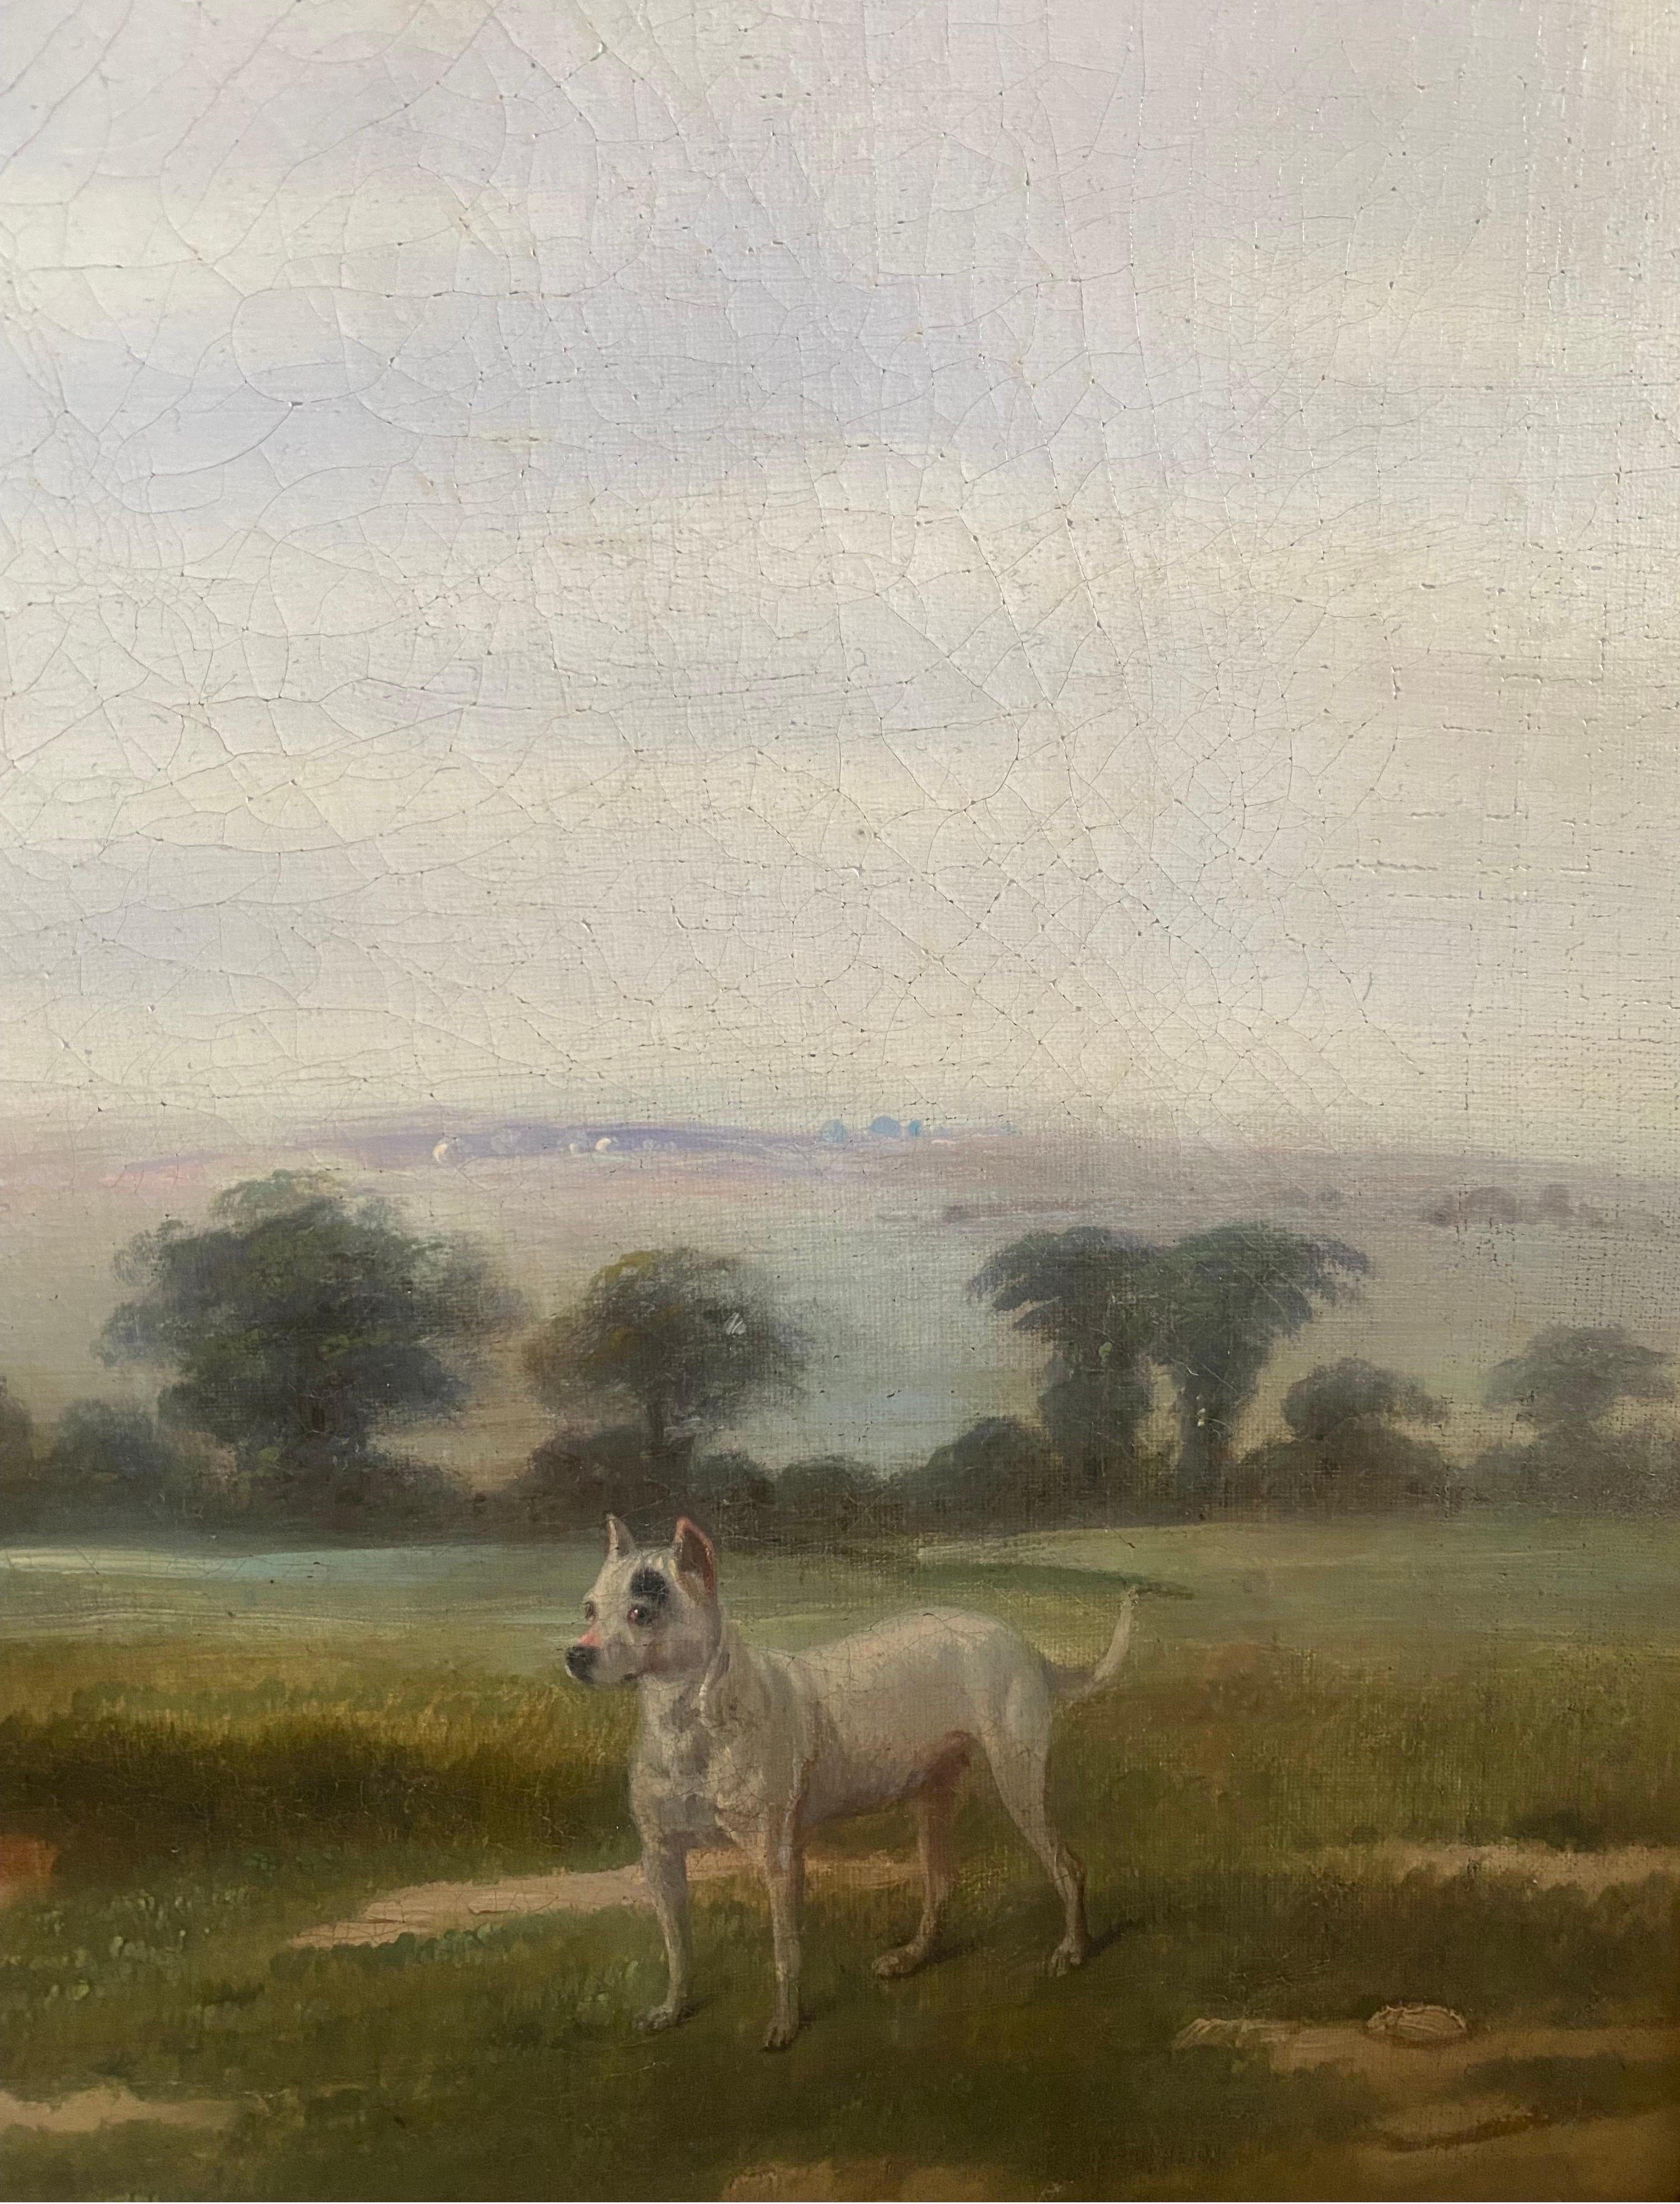 Ein brauner Jäger und ein schwarz-weißer, kurzhaariger Hund (möglicherweise ein Bullterrier) in einer weitläufigen englischen Landschaft, in der Nähe eine rustikale Scheune. Undeutlich signiert 'Br...' und datiert 1819 (links unten)

 Provenienz: